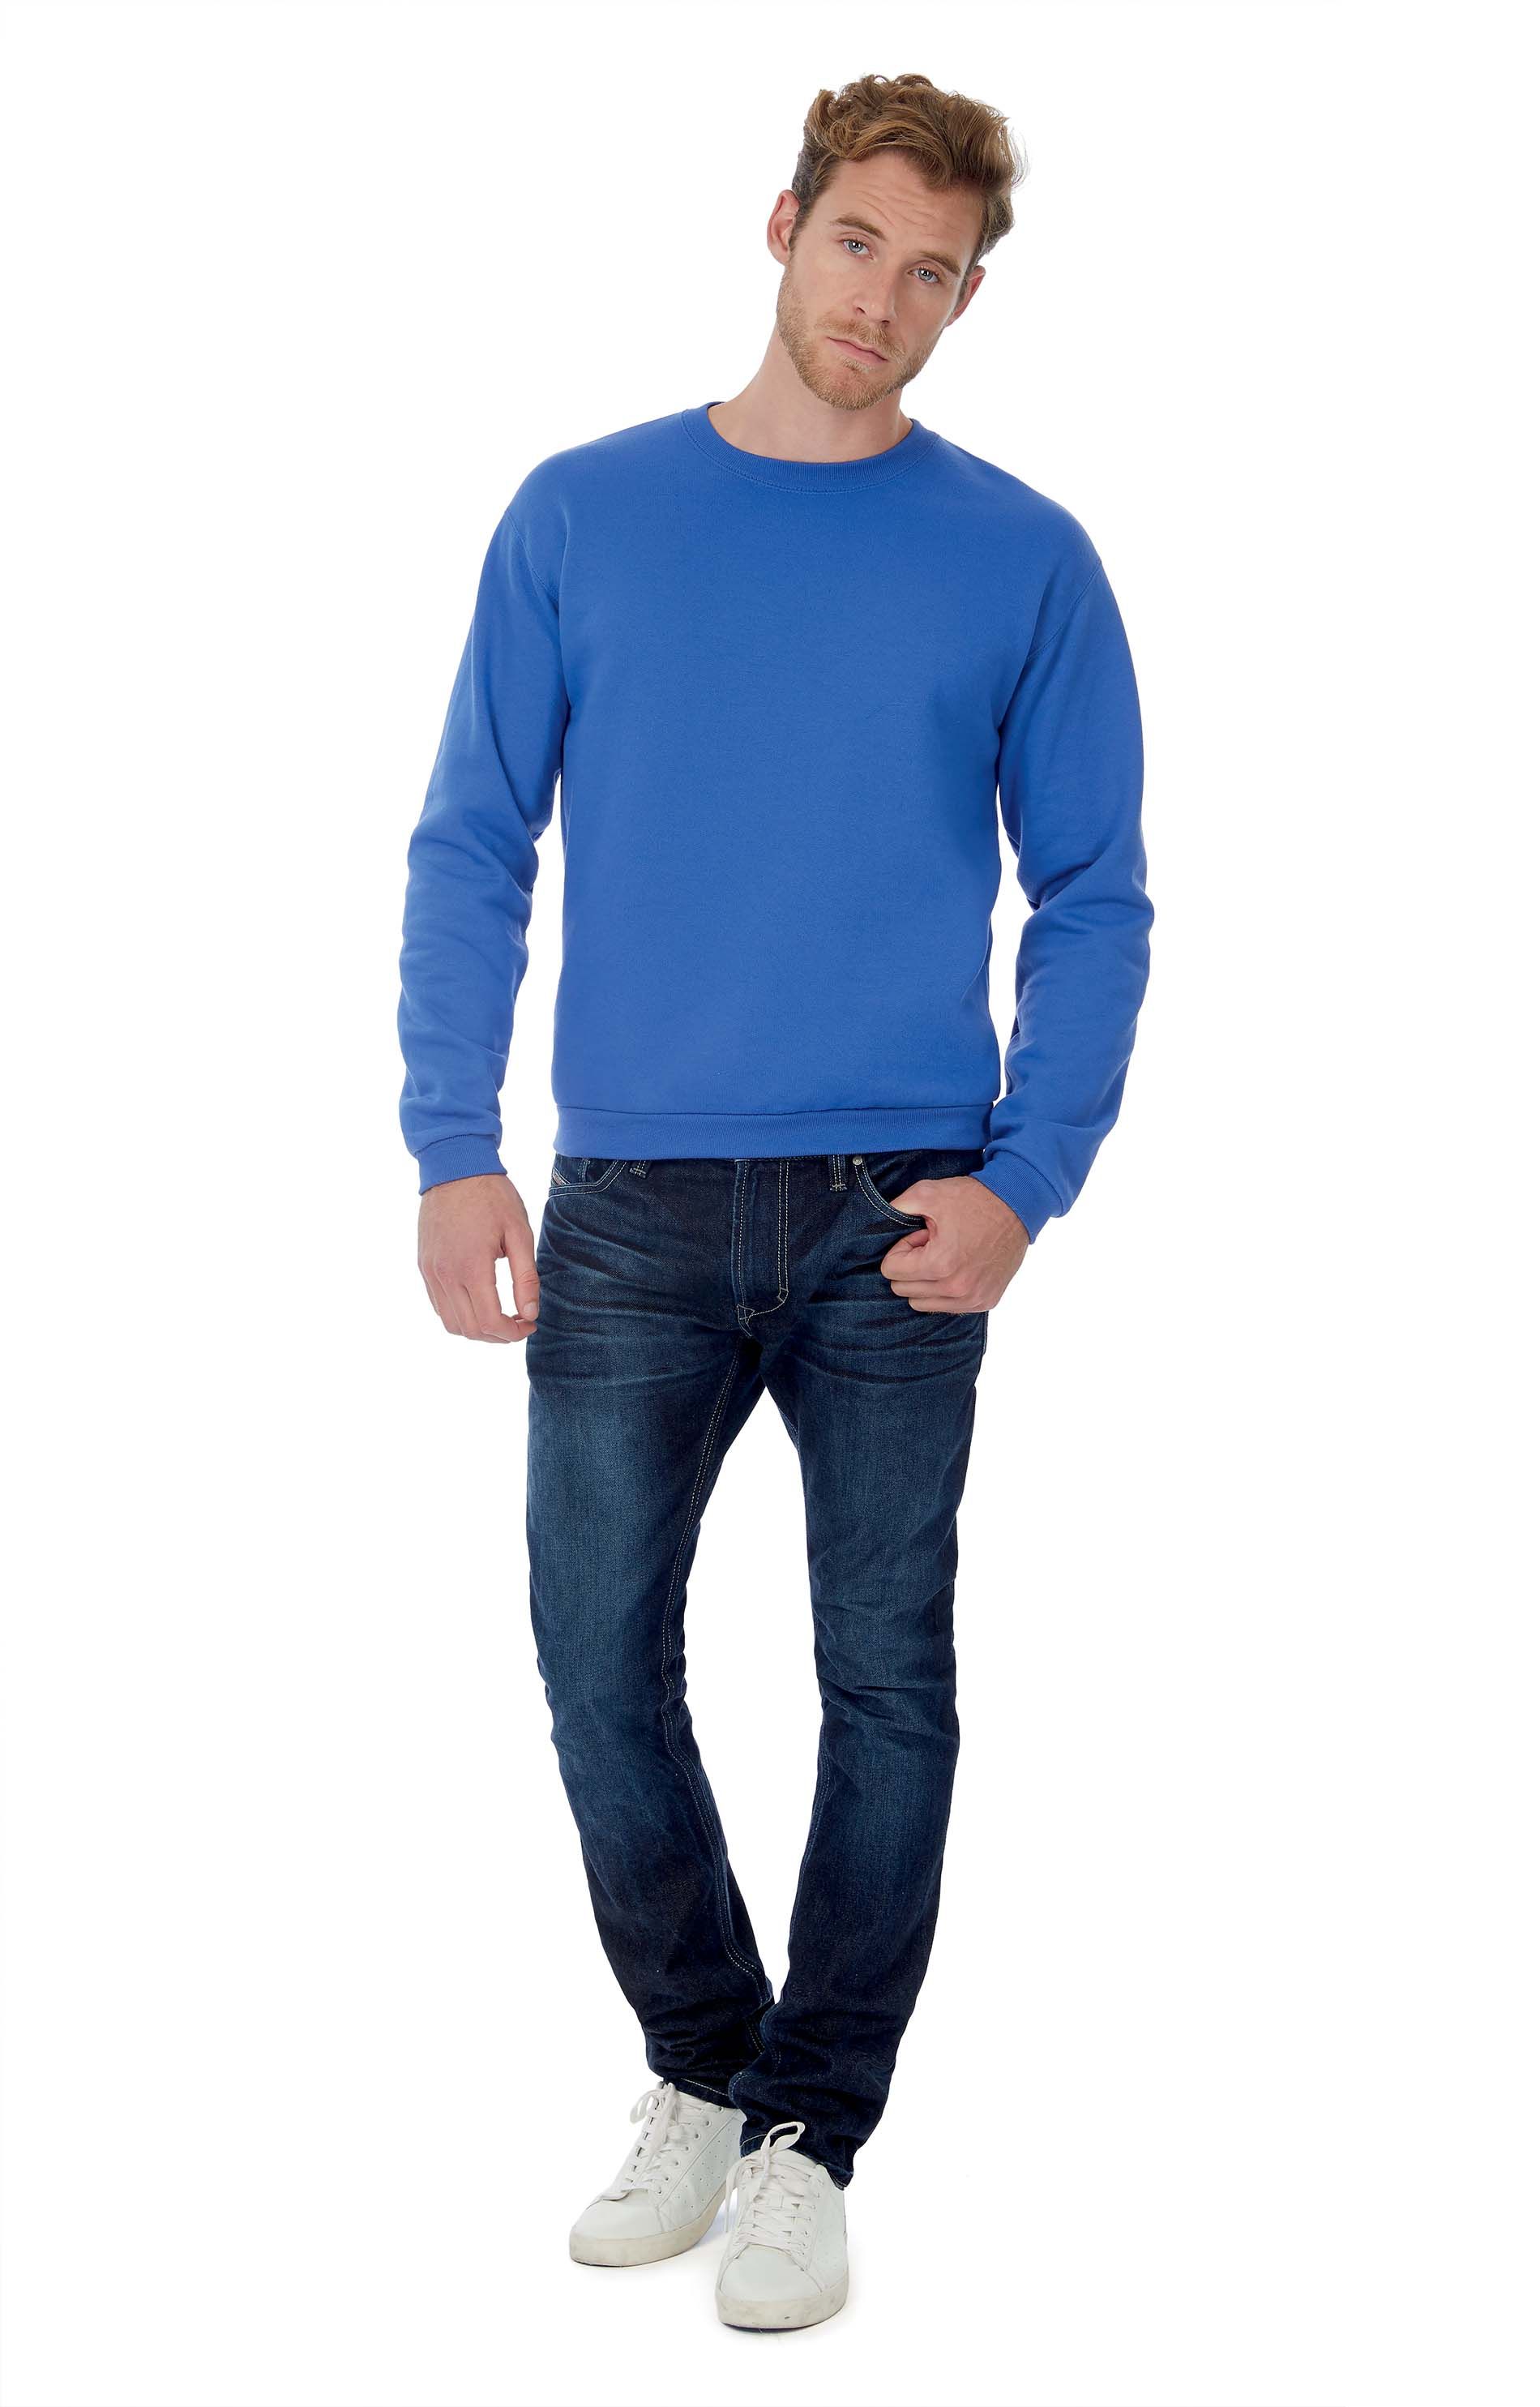 Large gamme de sweats-shirts et pulls à découvrir et personnaliser en ligne chez Textile Direct